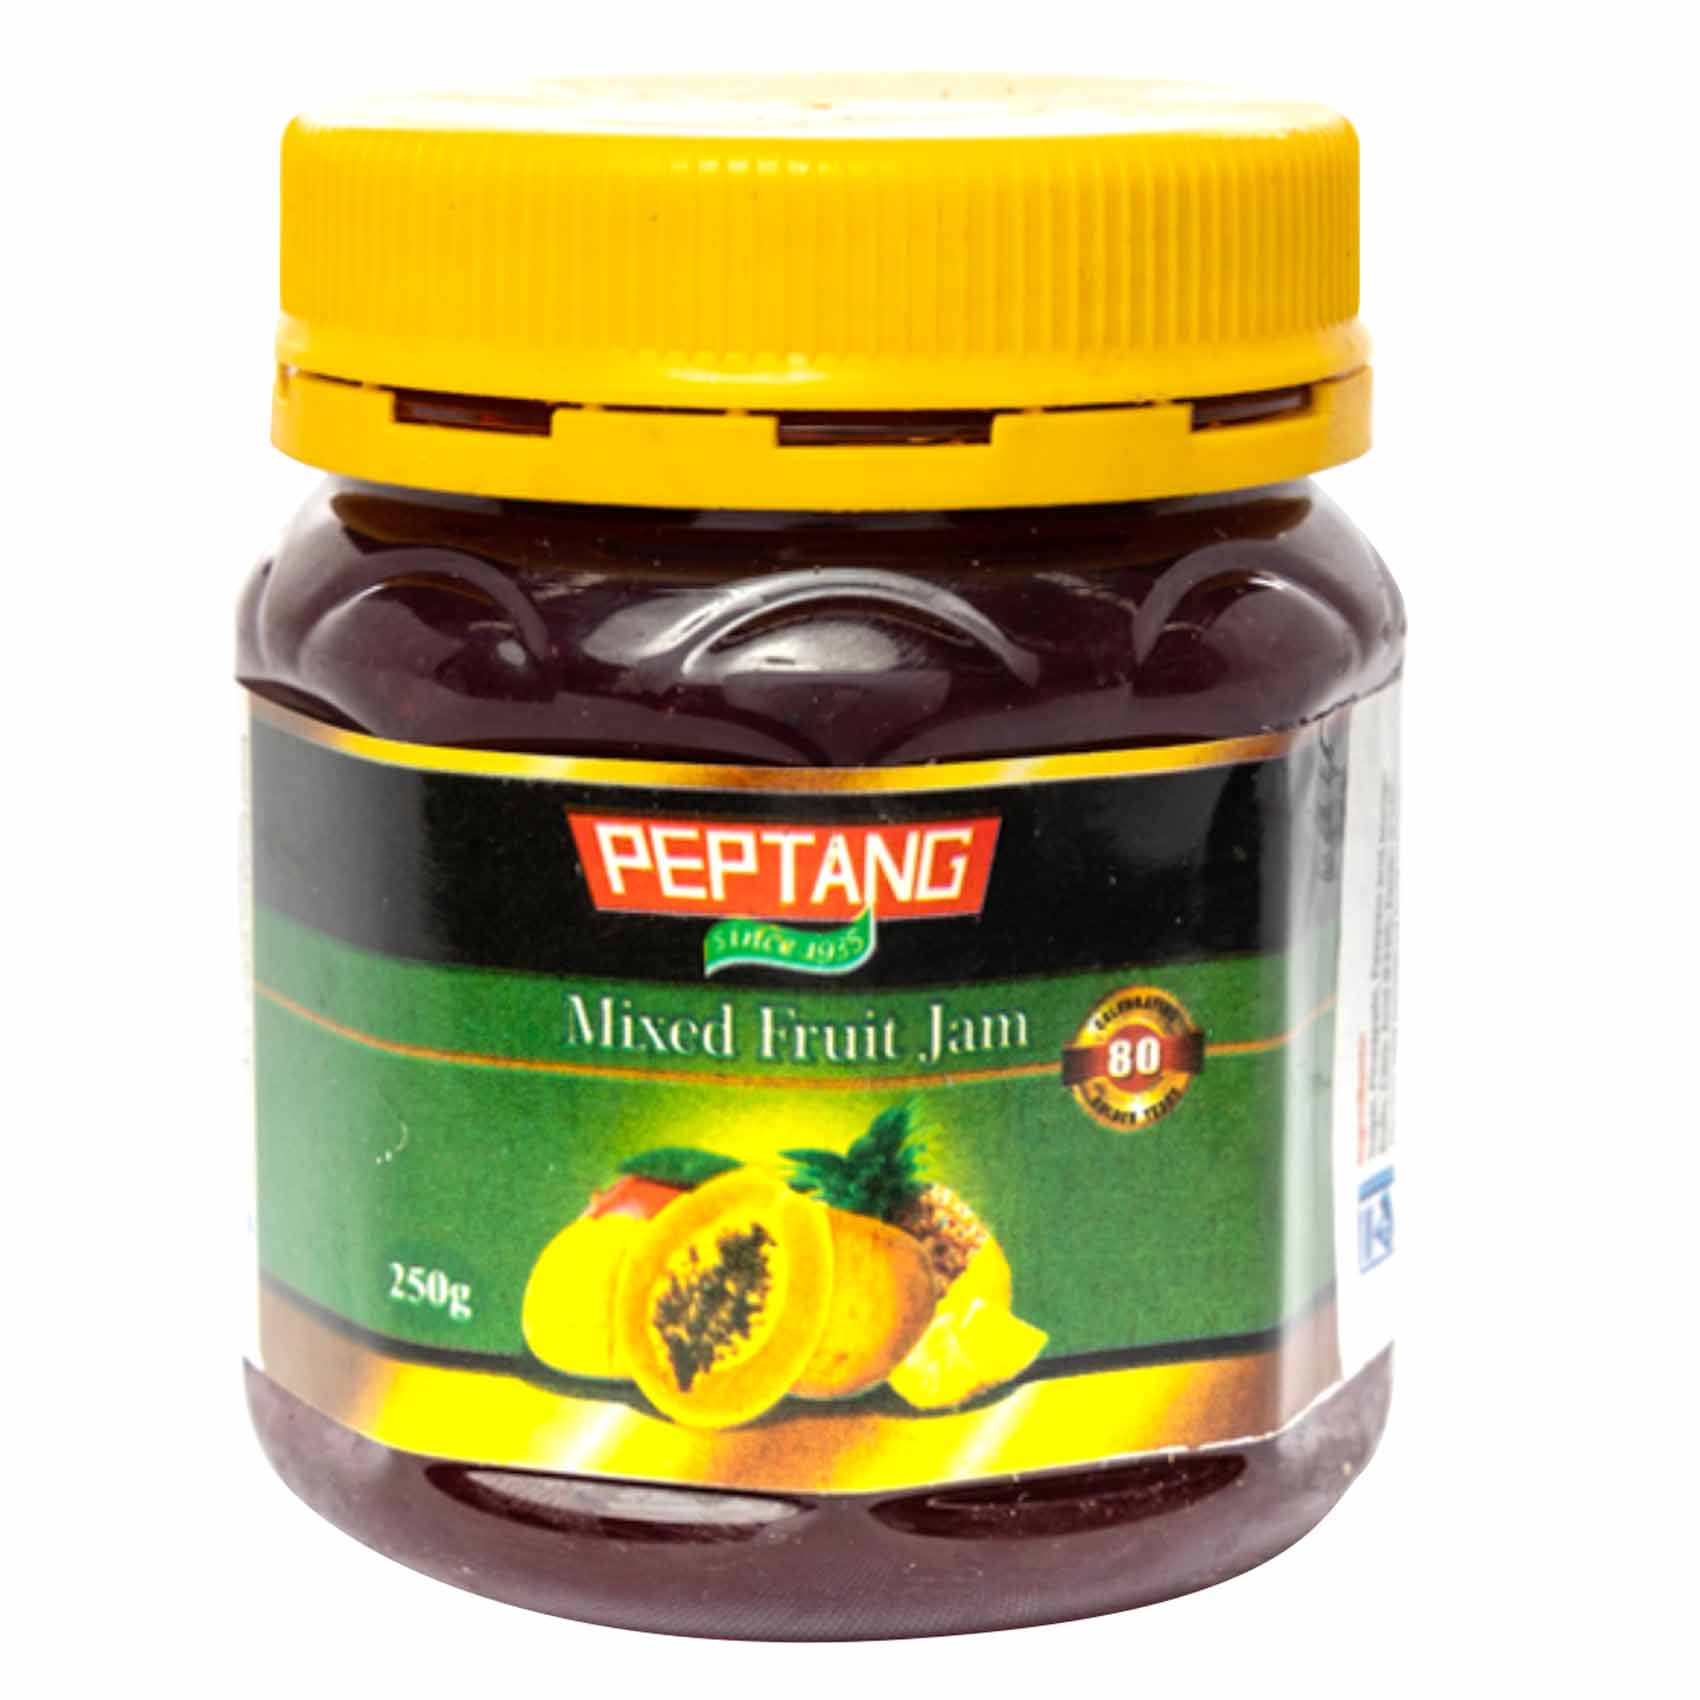 Peptang Mixed Fruit Jam 250g